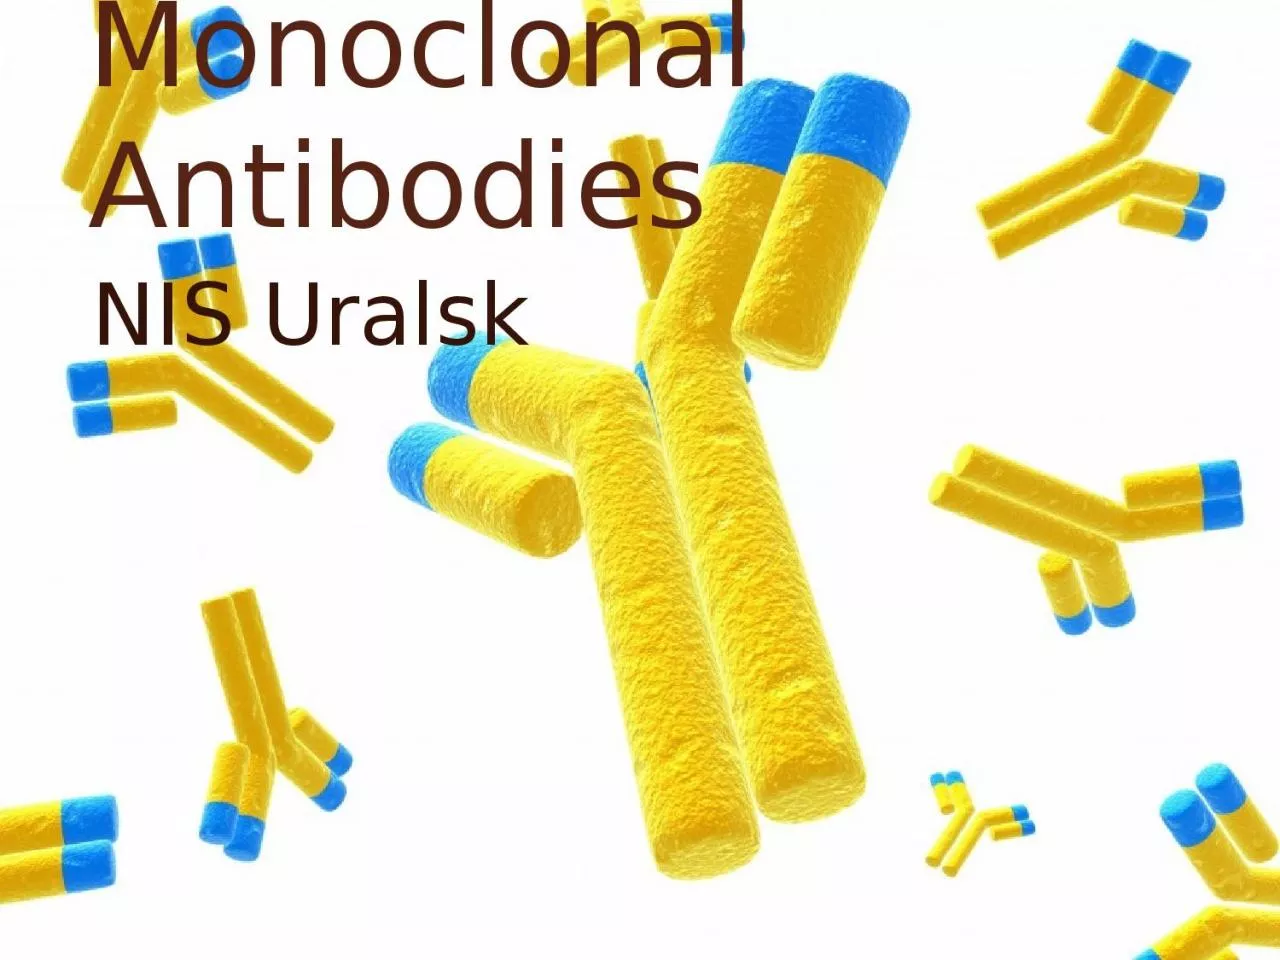 Monoclonal Antibodies NIS Uralsk